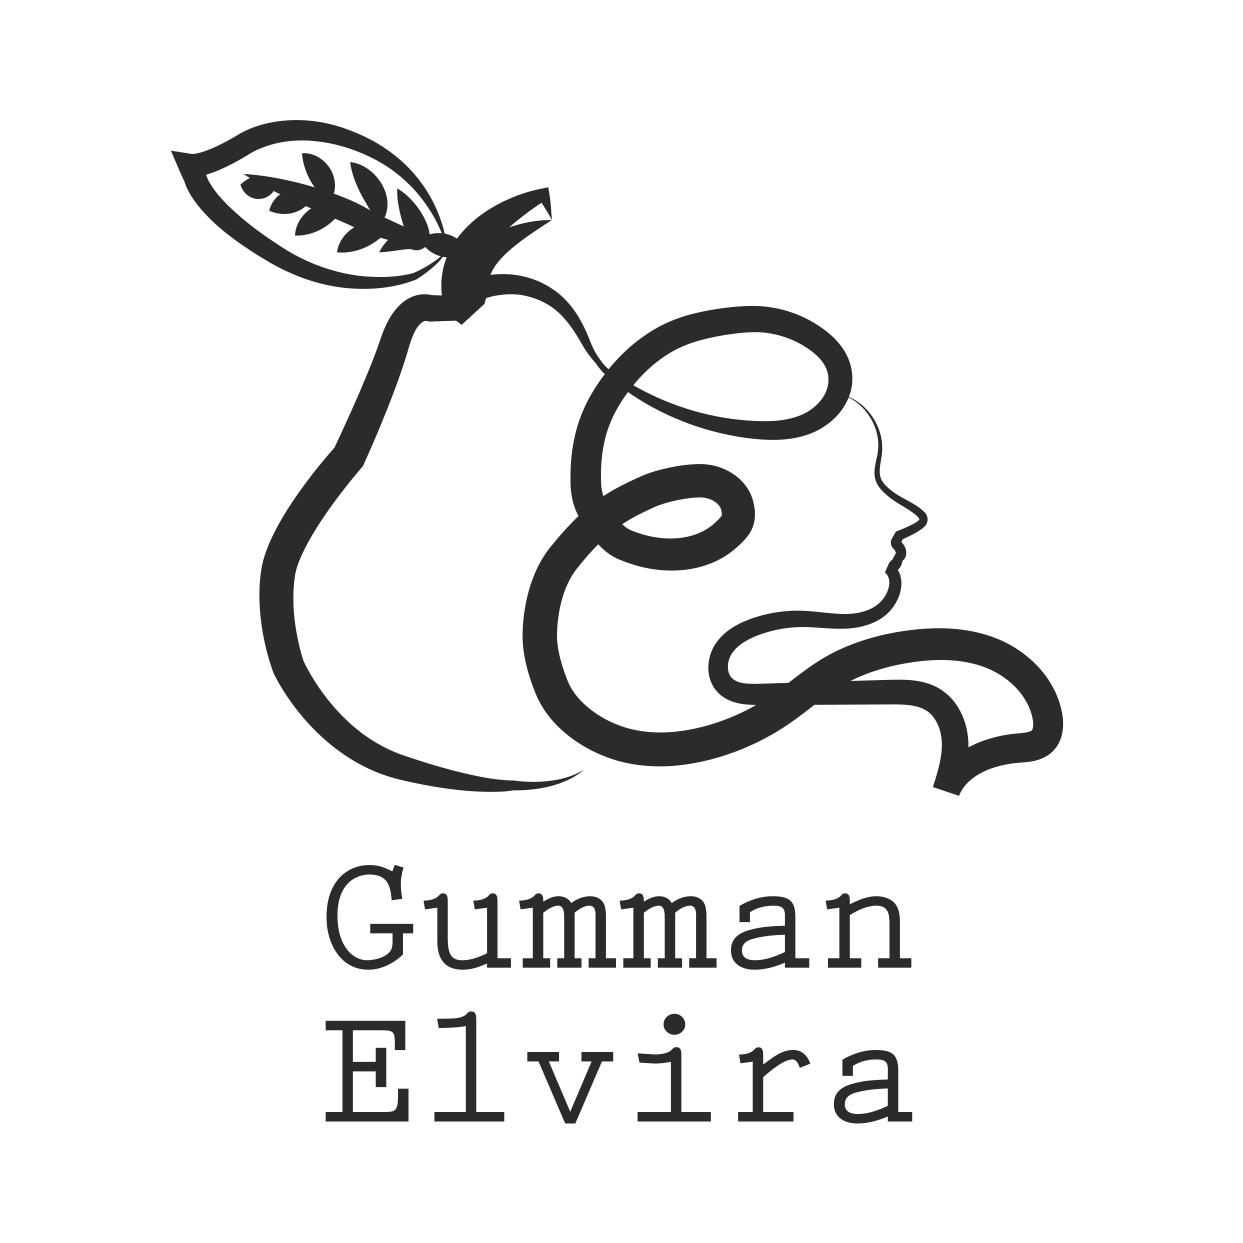 Gumman_Logo_No_Circle_Gray